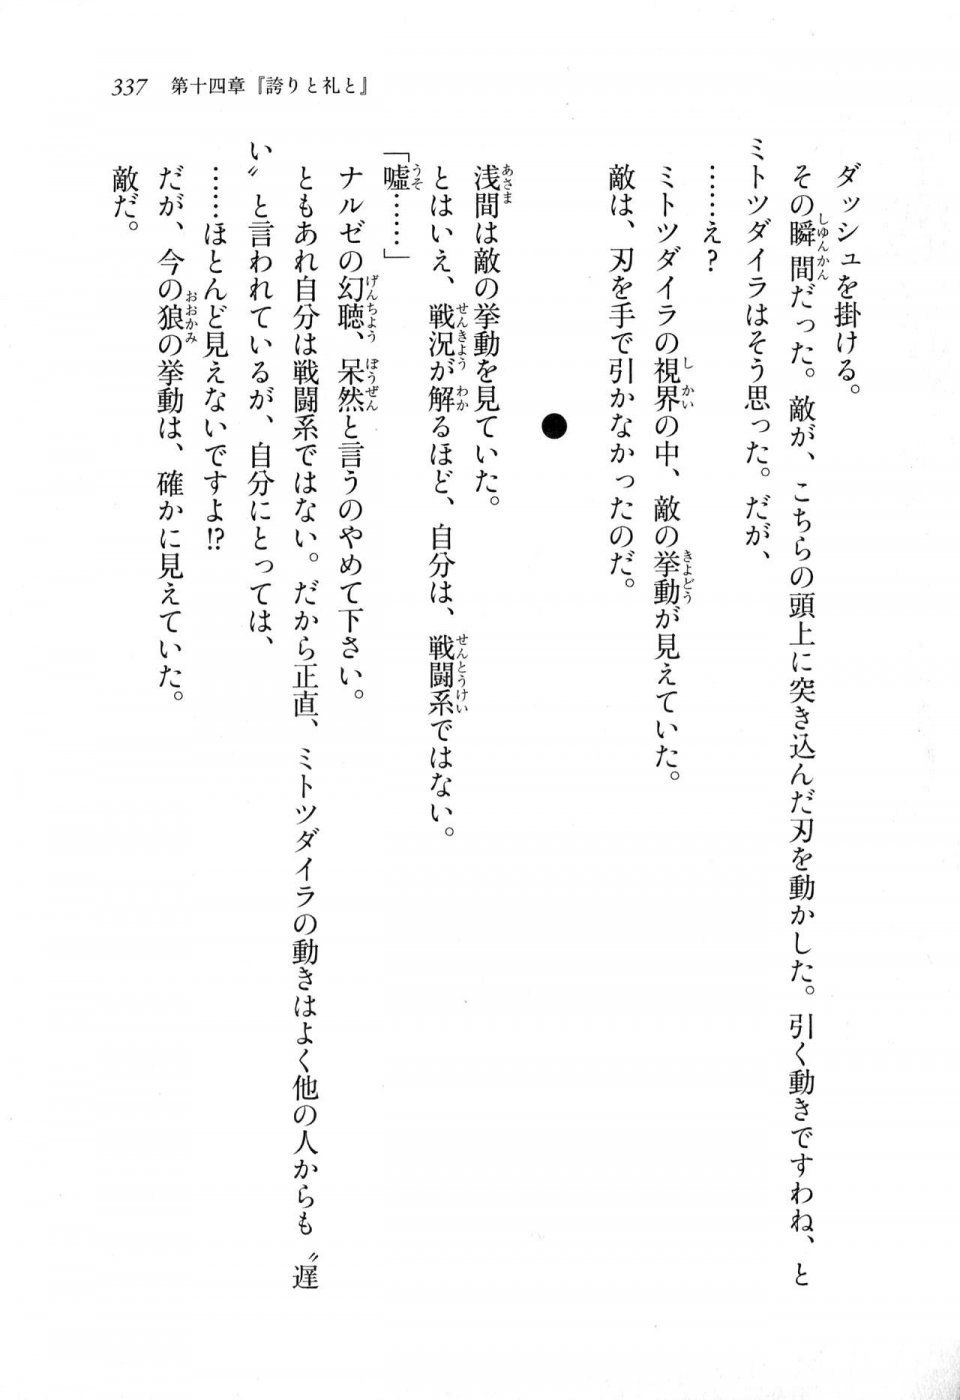 Kyoukai Senjou no Horizon LN Sidestory Vol 1 - Photo #335